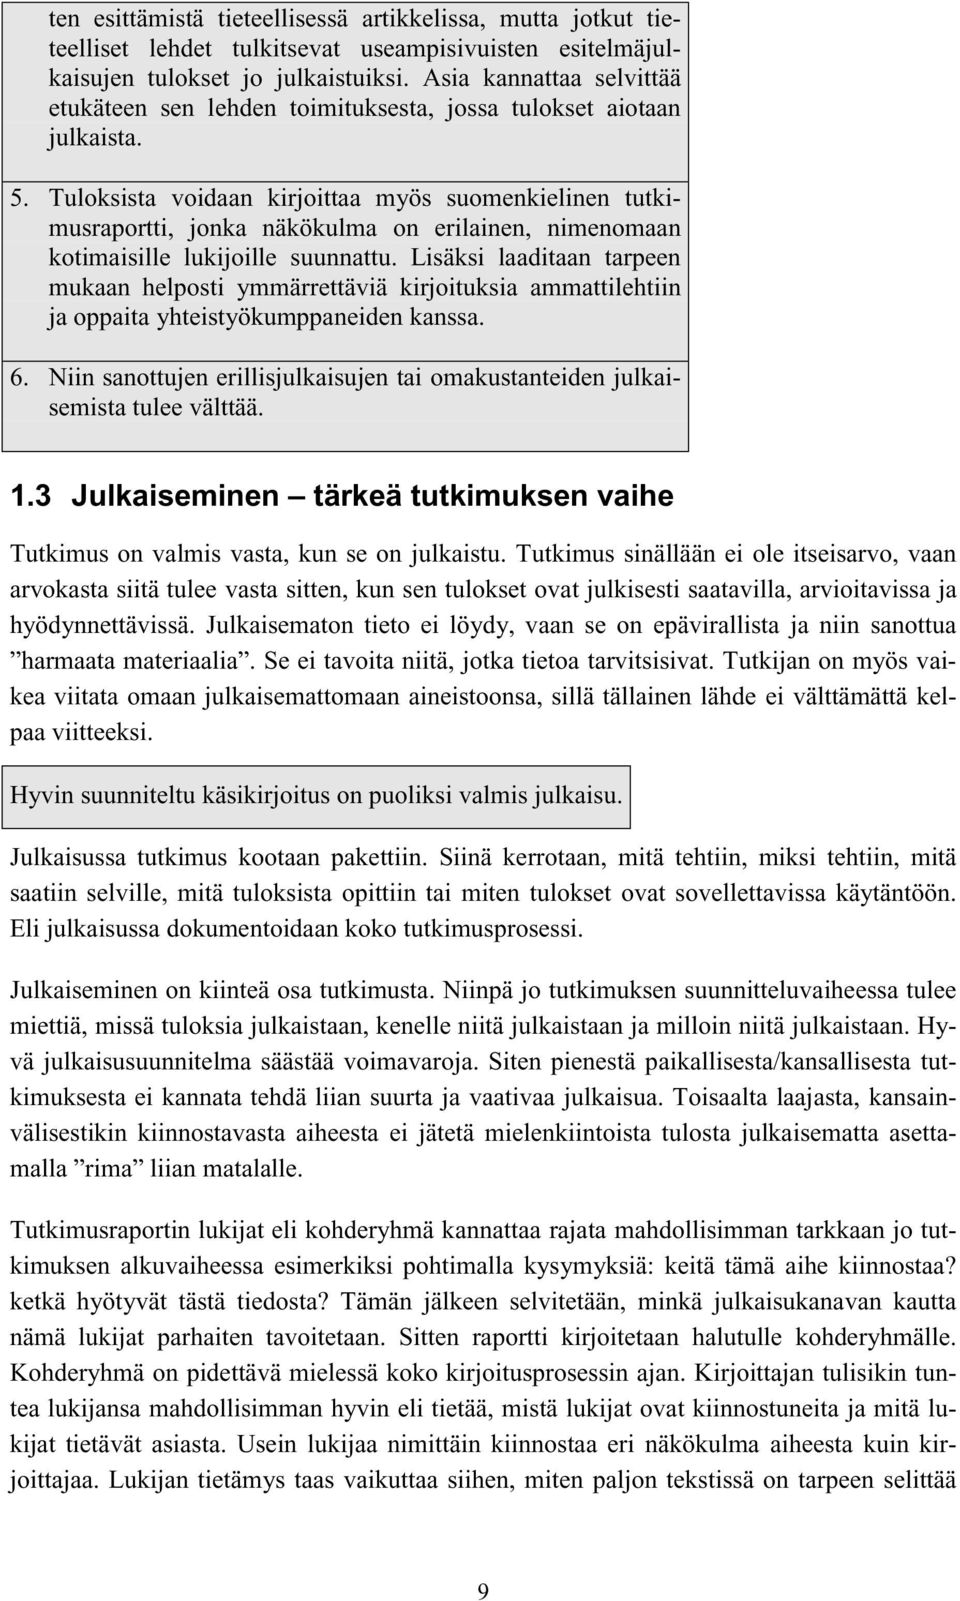 Tuloksista voidaan kirjoittaa myös suomenkielinen tutkimusraportti, jonka näkökulma on erilainen, nimenomaan kotimaisille lukijoille suunnattu.